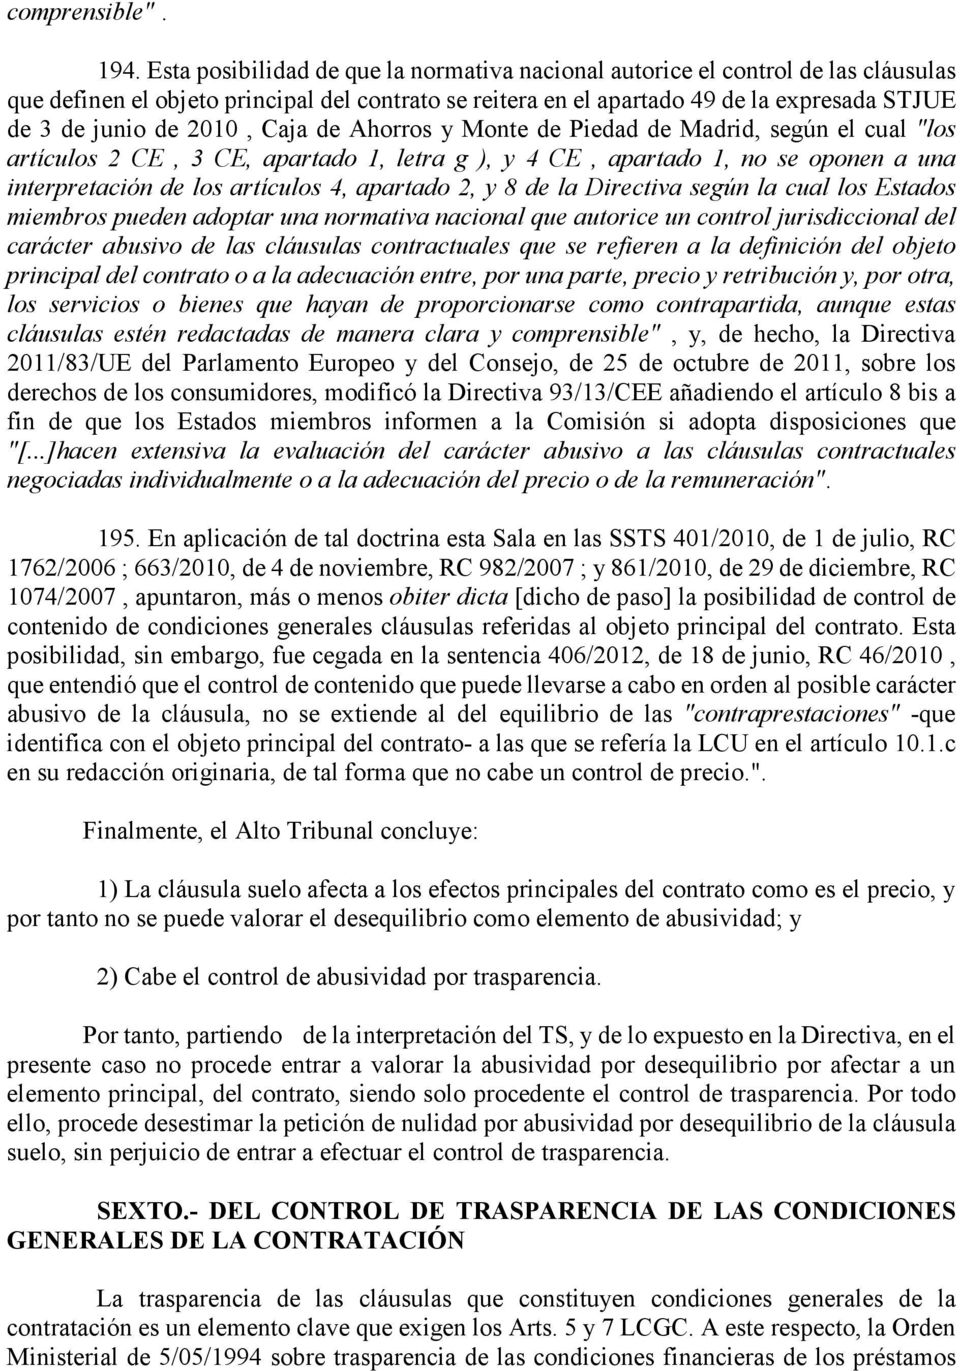 2010, Caja de Ahorros y Monte de Piedad de Madrid, según el cual "los artículos 2 CE, 3 CE, apartado 1, letra g ), y 4 CE, apartado 1, no se oponen a una interpretación de los artículos 4, apartado